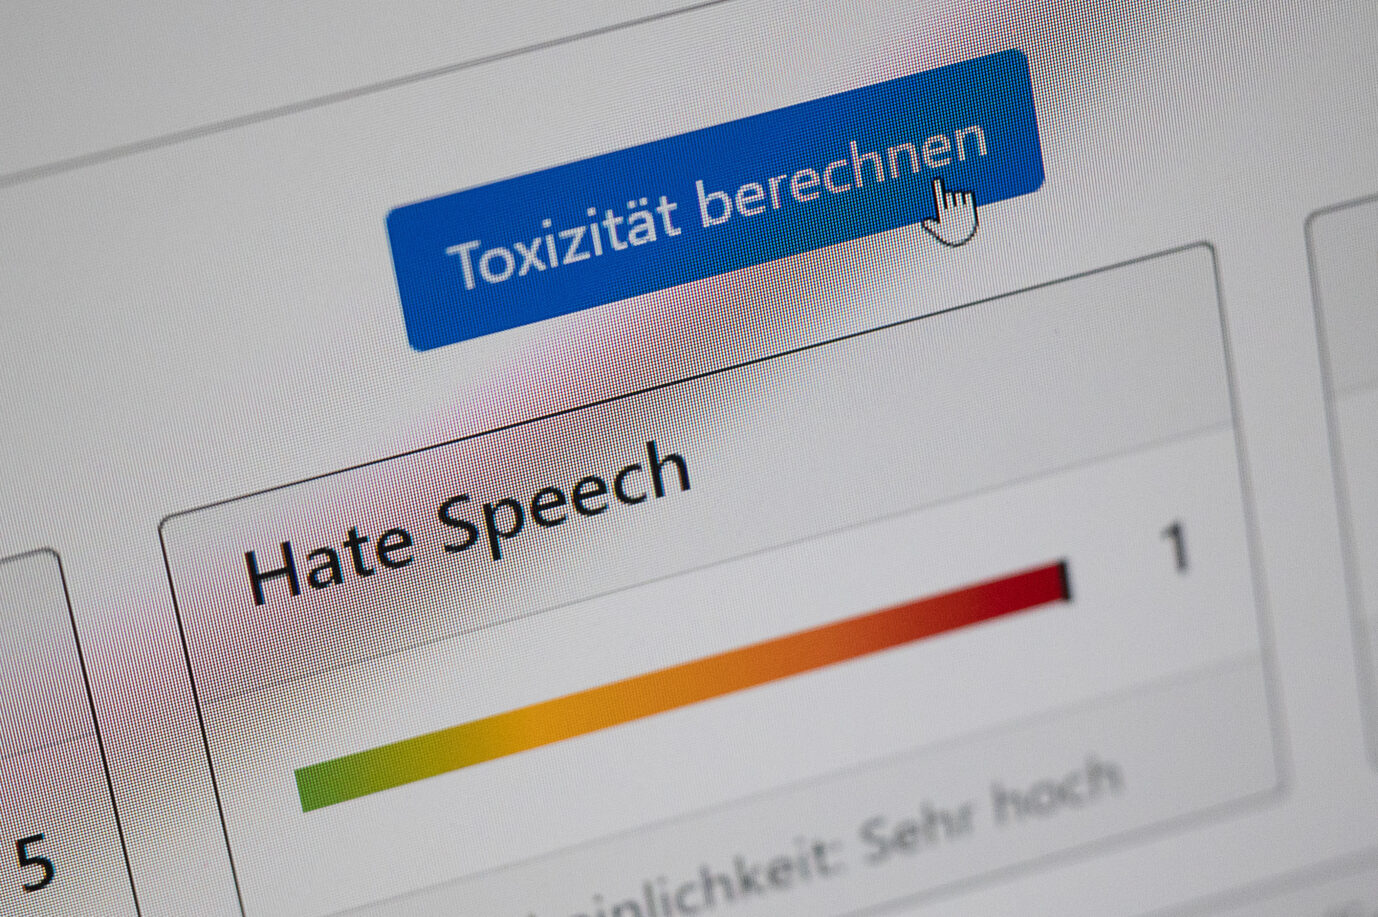 Das Konzept der Haßrede (Hate Speech) nützt vor allem linken politischen Interessen.